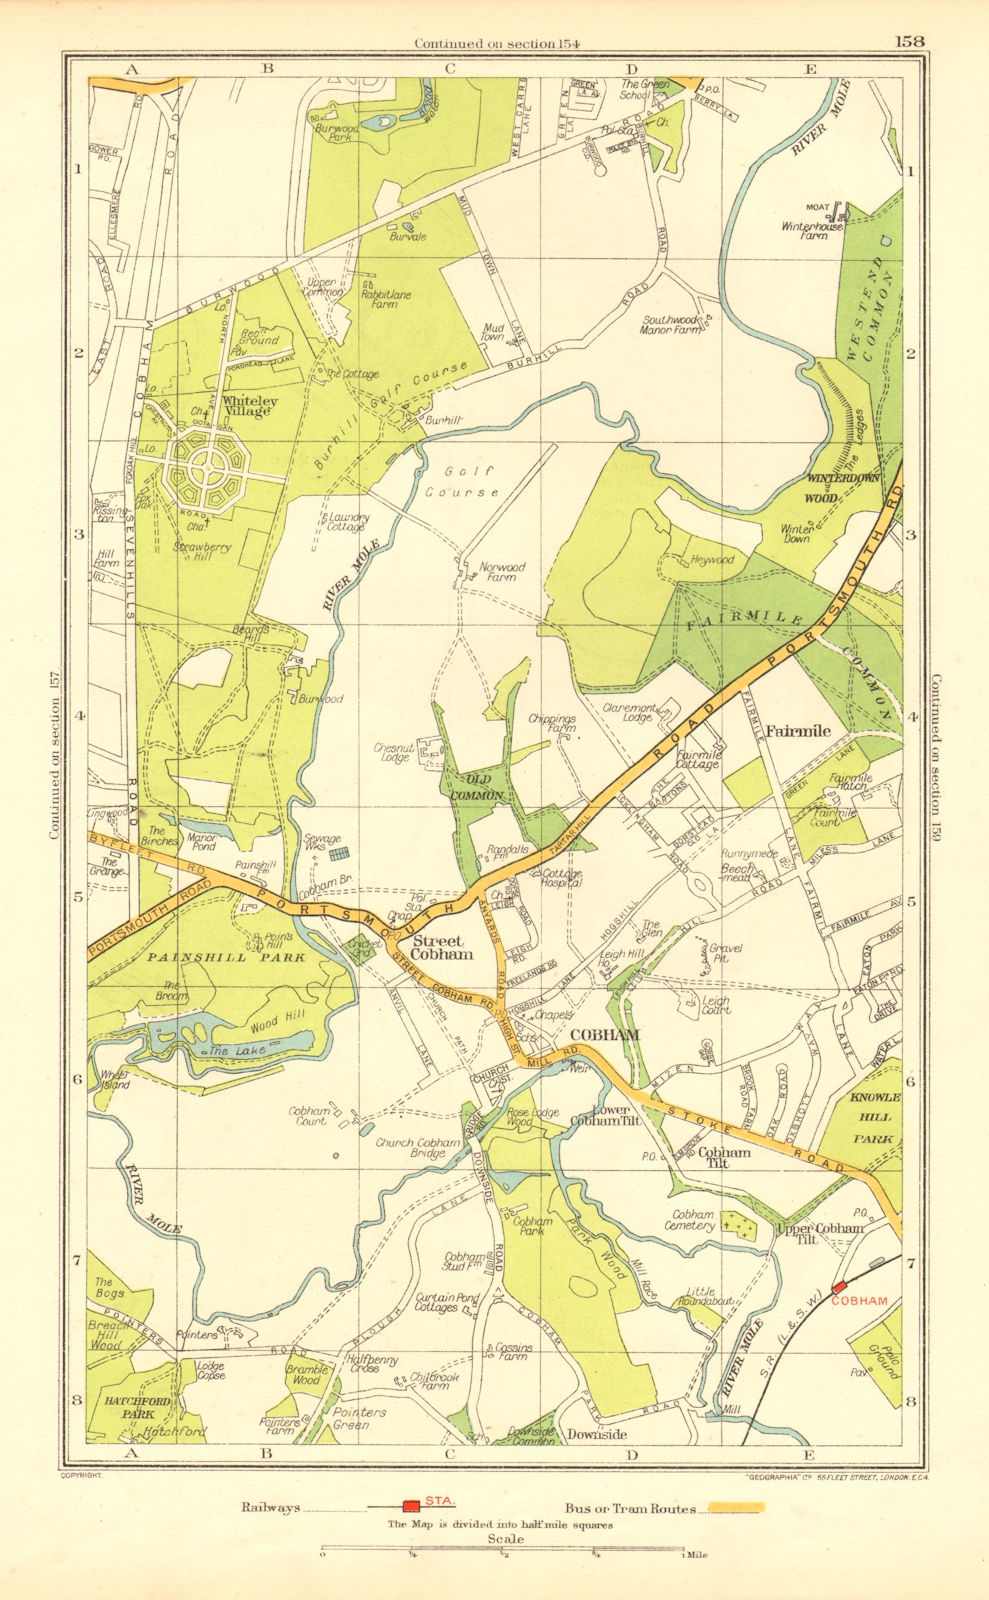 COBHAM. Stoke d'Abernon Whiteley Village Fairmile Burwood Park(Surrey) 1937 map